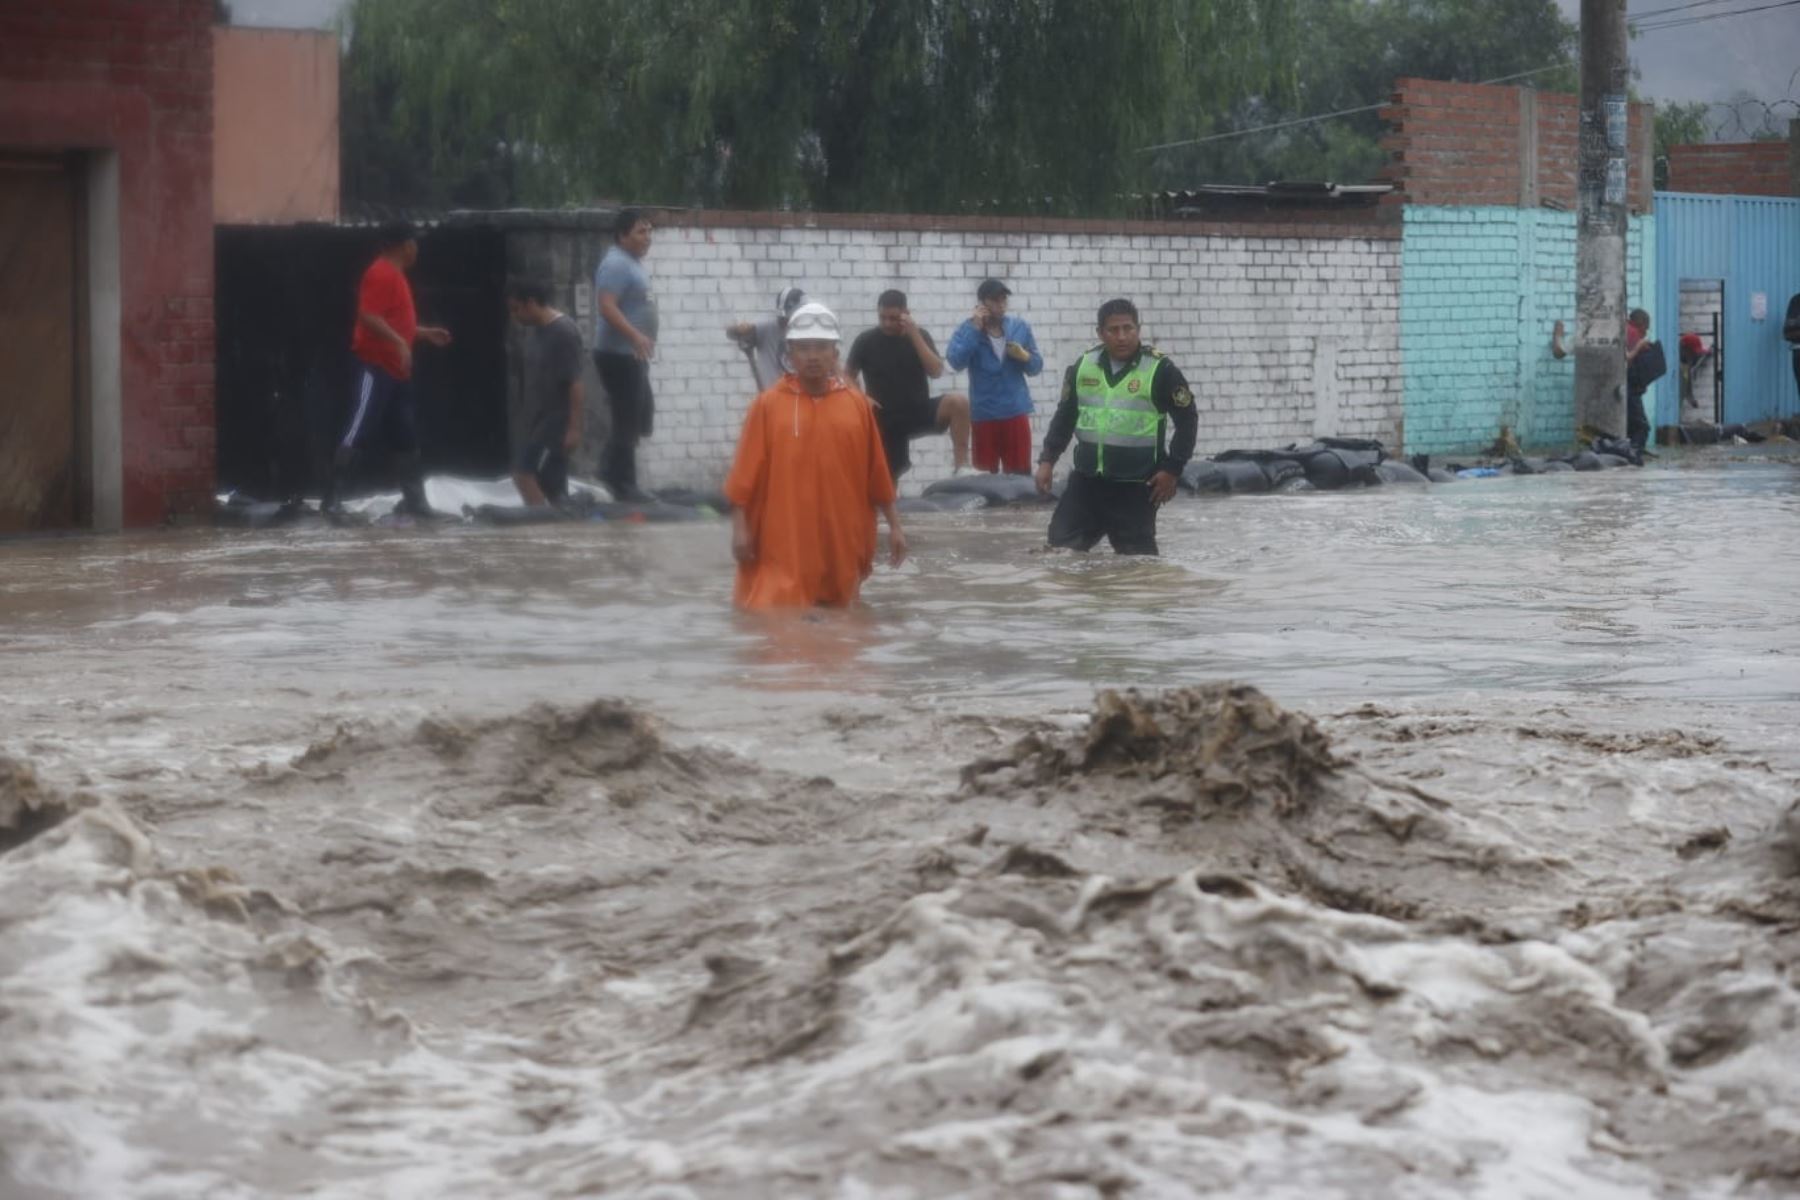 La Carretera Central luce esta tarde completamente inundada en el distrito de Chaclacayo, debido a la activación de la quebrada Los Laureles por las intensas lluvias que se registraron en las últimas horas. Foto: ANDINA/Vidal Tarqui